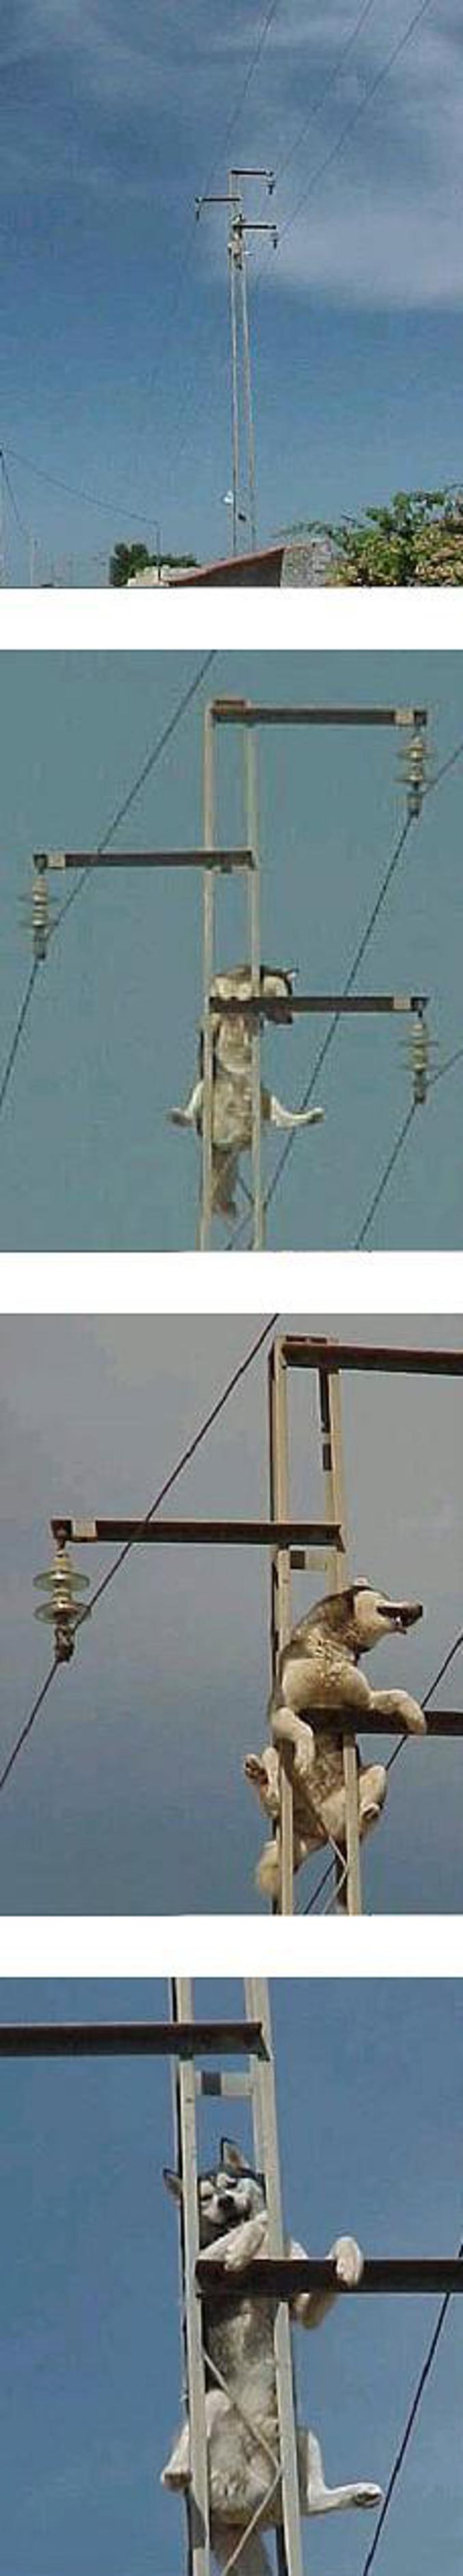 Un chien grimpé sur un poteau électrique.